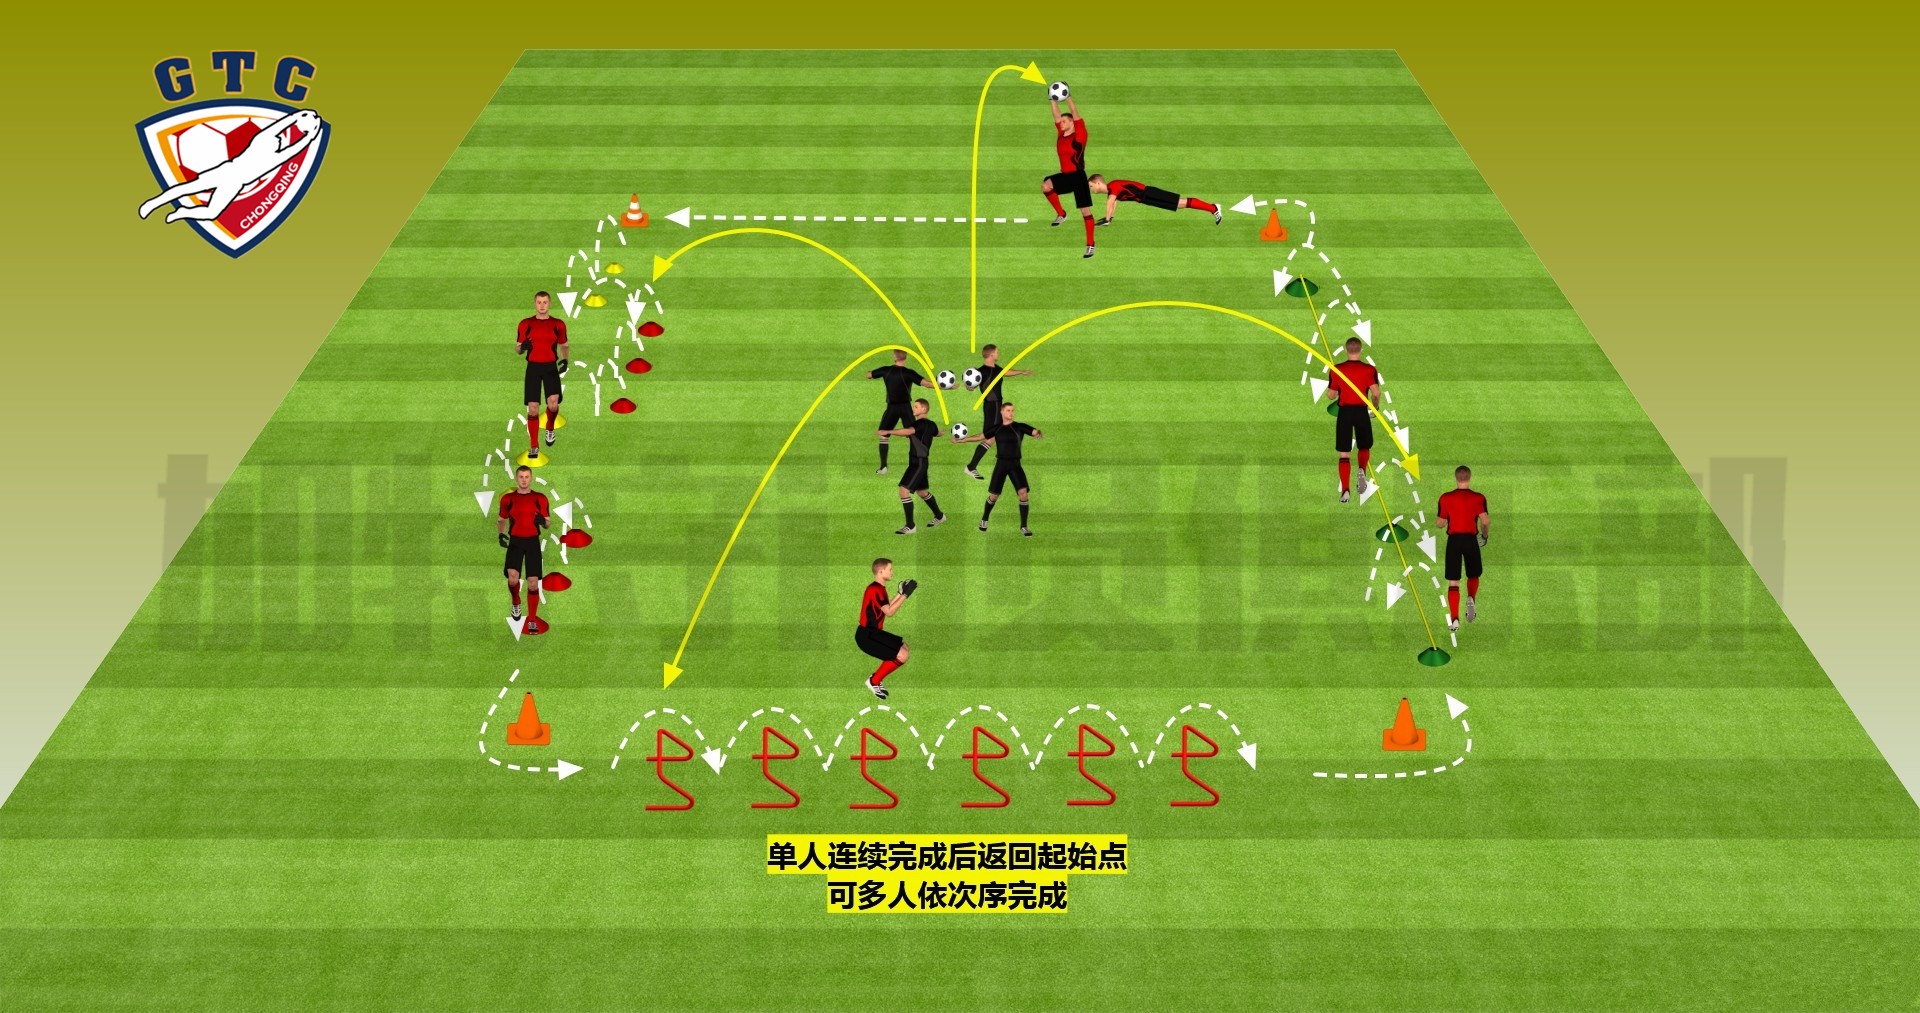 实用技术:守门员必备的技巧 :敏捷综合练习 - 足